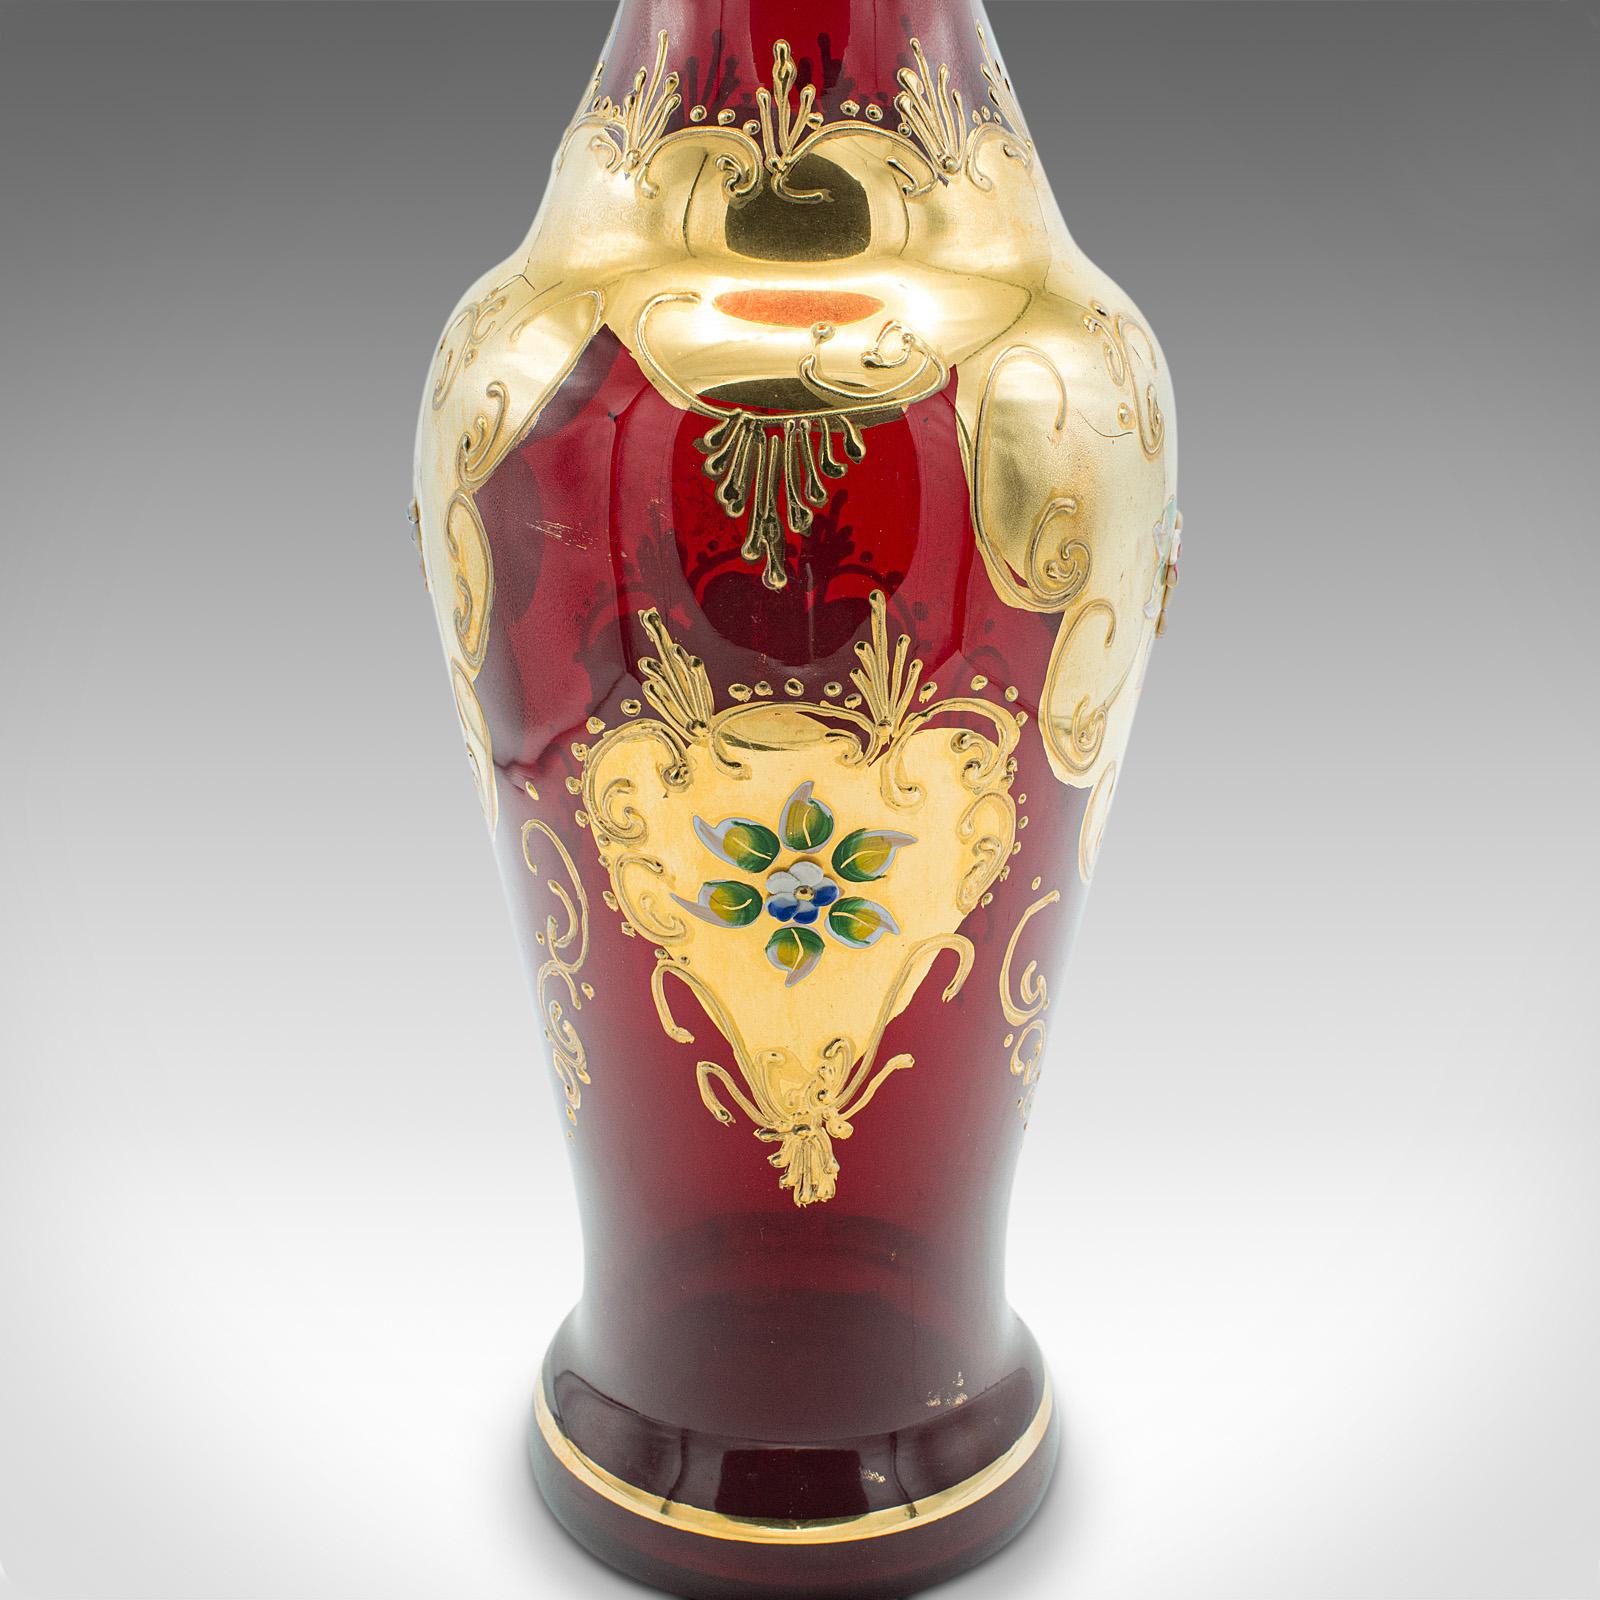 Vintage Venetian Show Vase, Italian Art Glass, Gilt, Decorative Flower Urn, 1970 For Sale 5